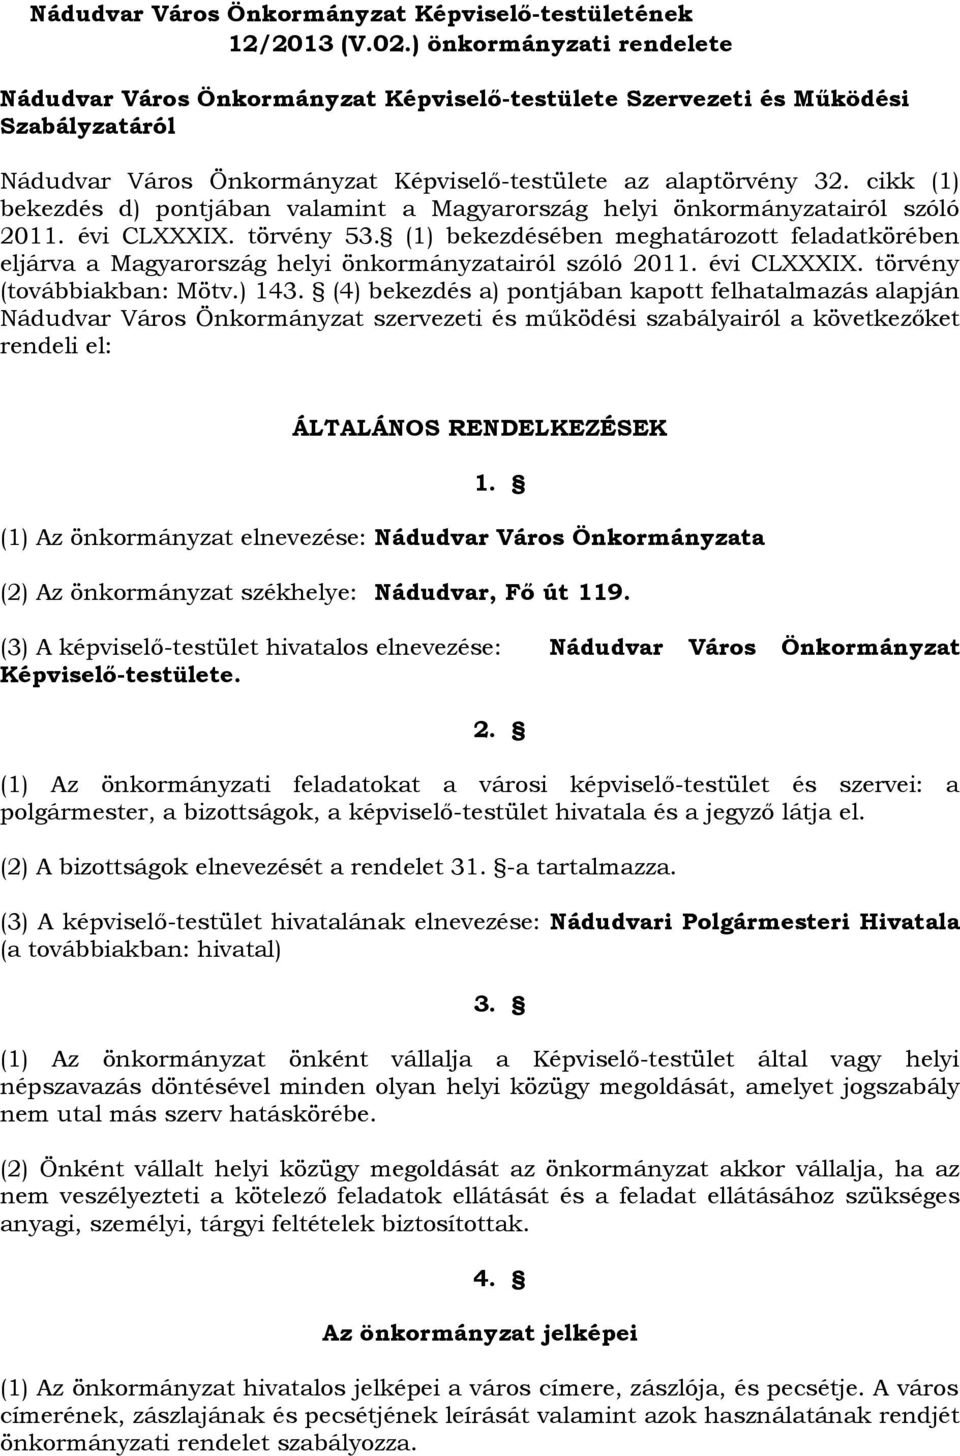 cikk (1) bekezdés d) pontjában valamint a Magyarország helyi önkormányzatairól szóló 2011. évi CLXXXIX. törvény 53.